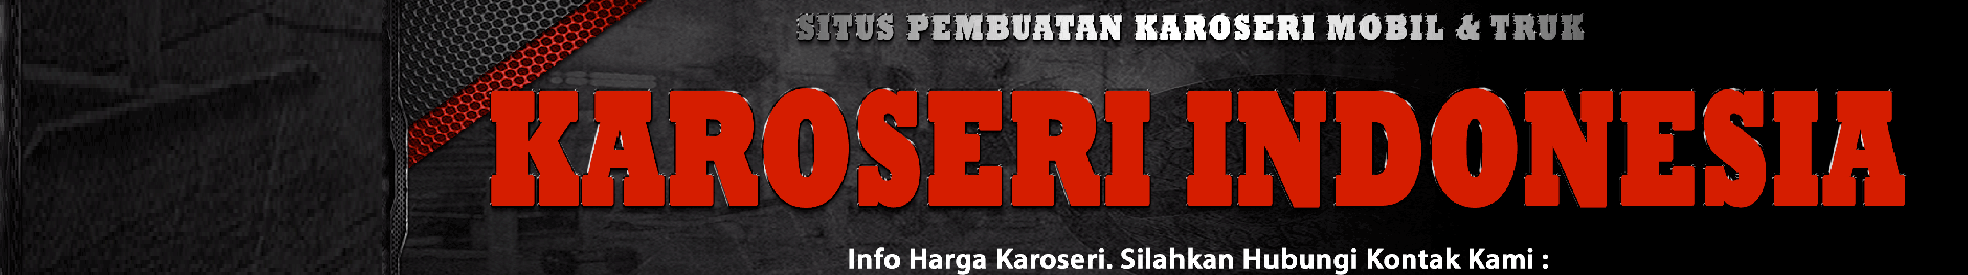 Karoseri Jakartas profilbanner